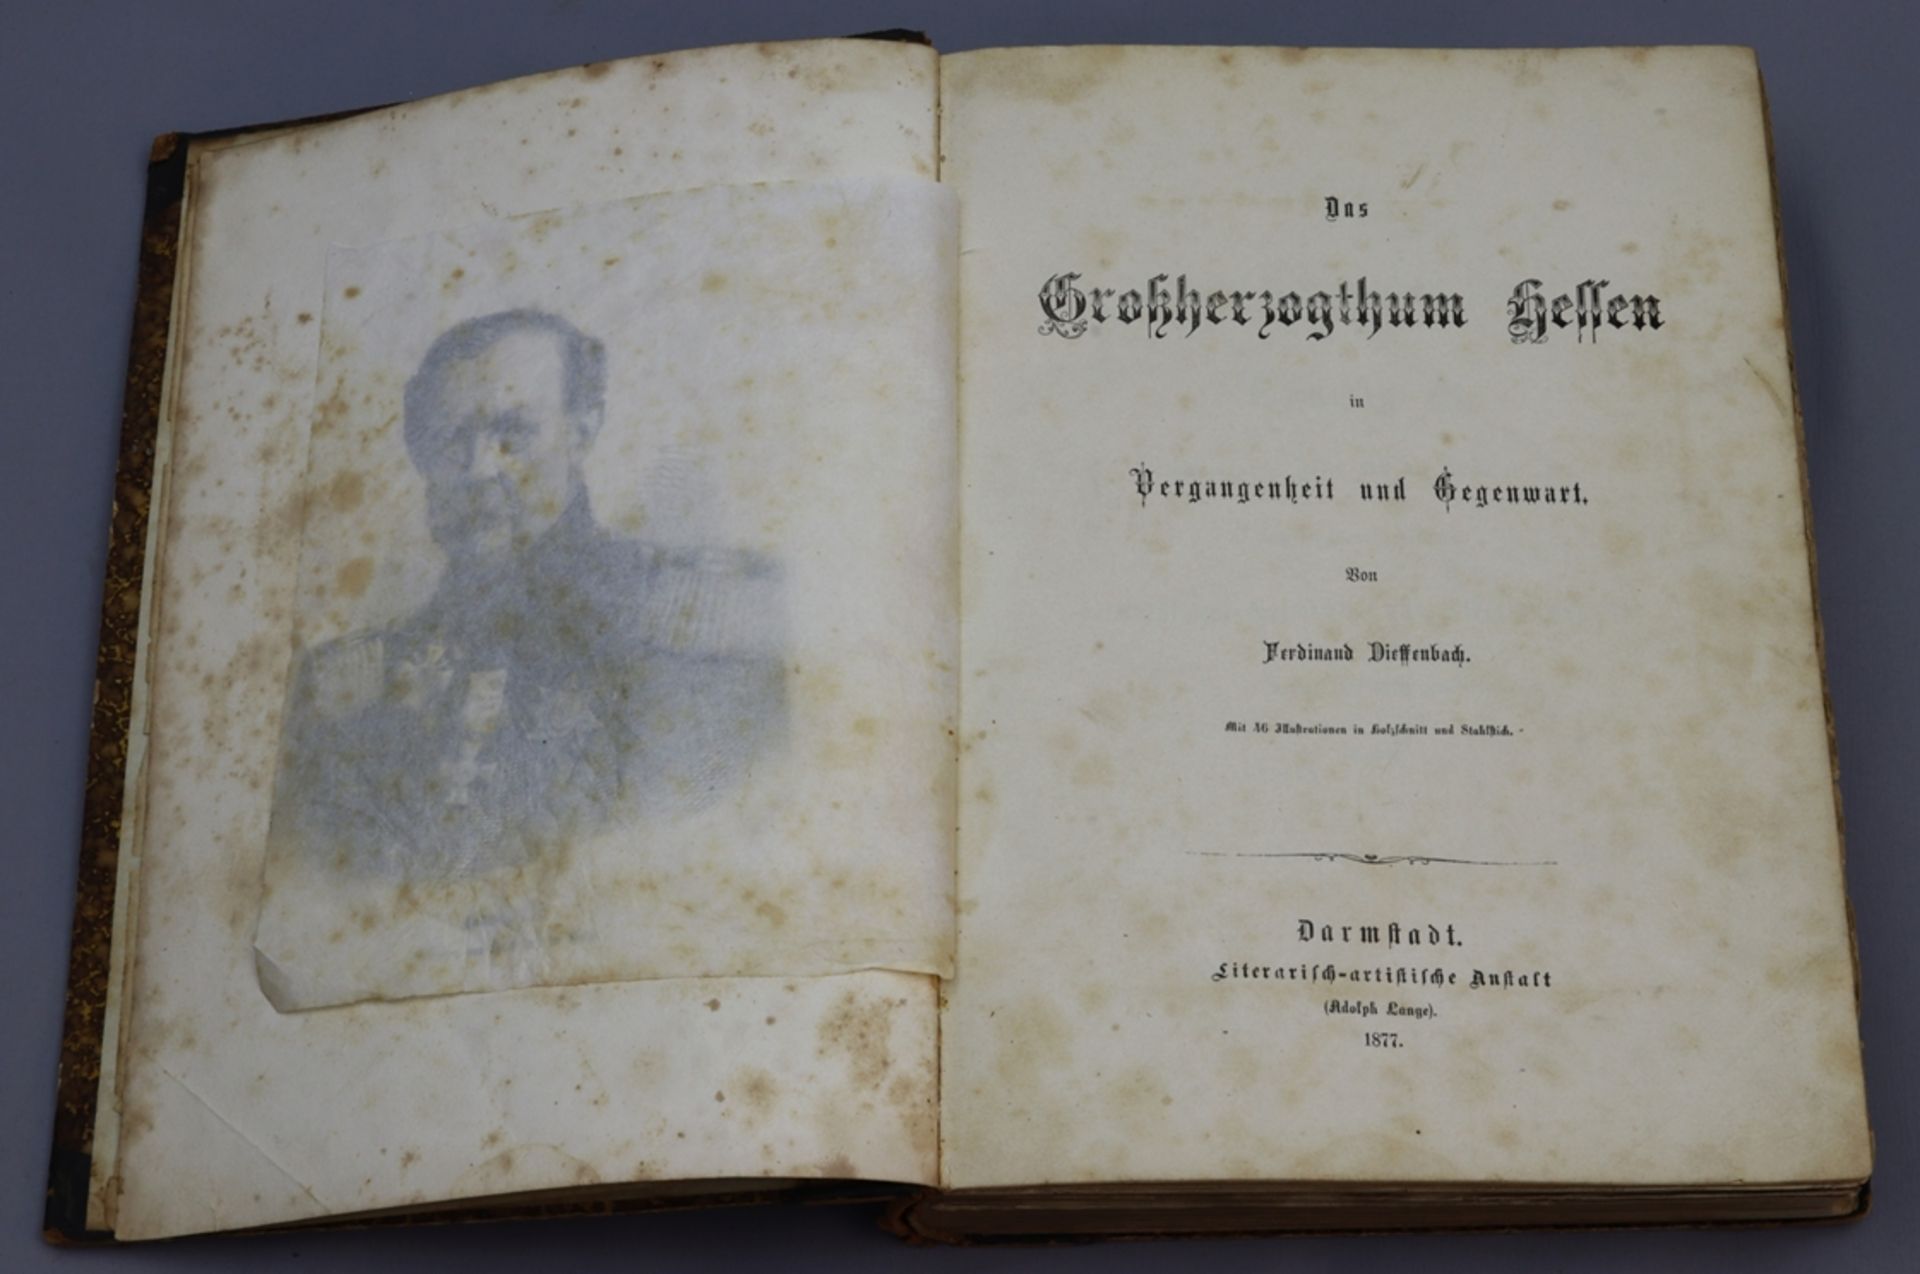 Das Großherzogthum Hessen in Vergangenheit und Gegenwart 1877 - Image 3 of 5